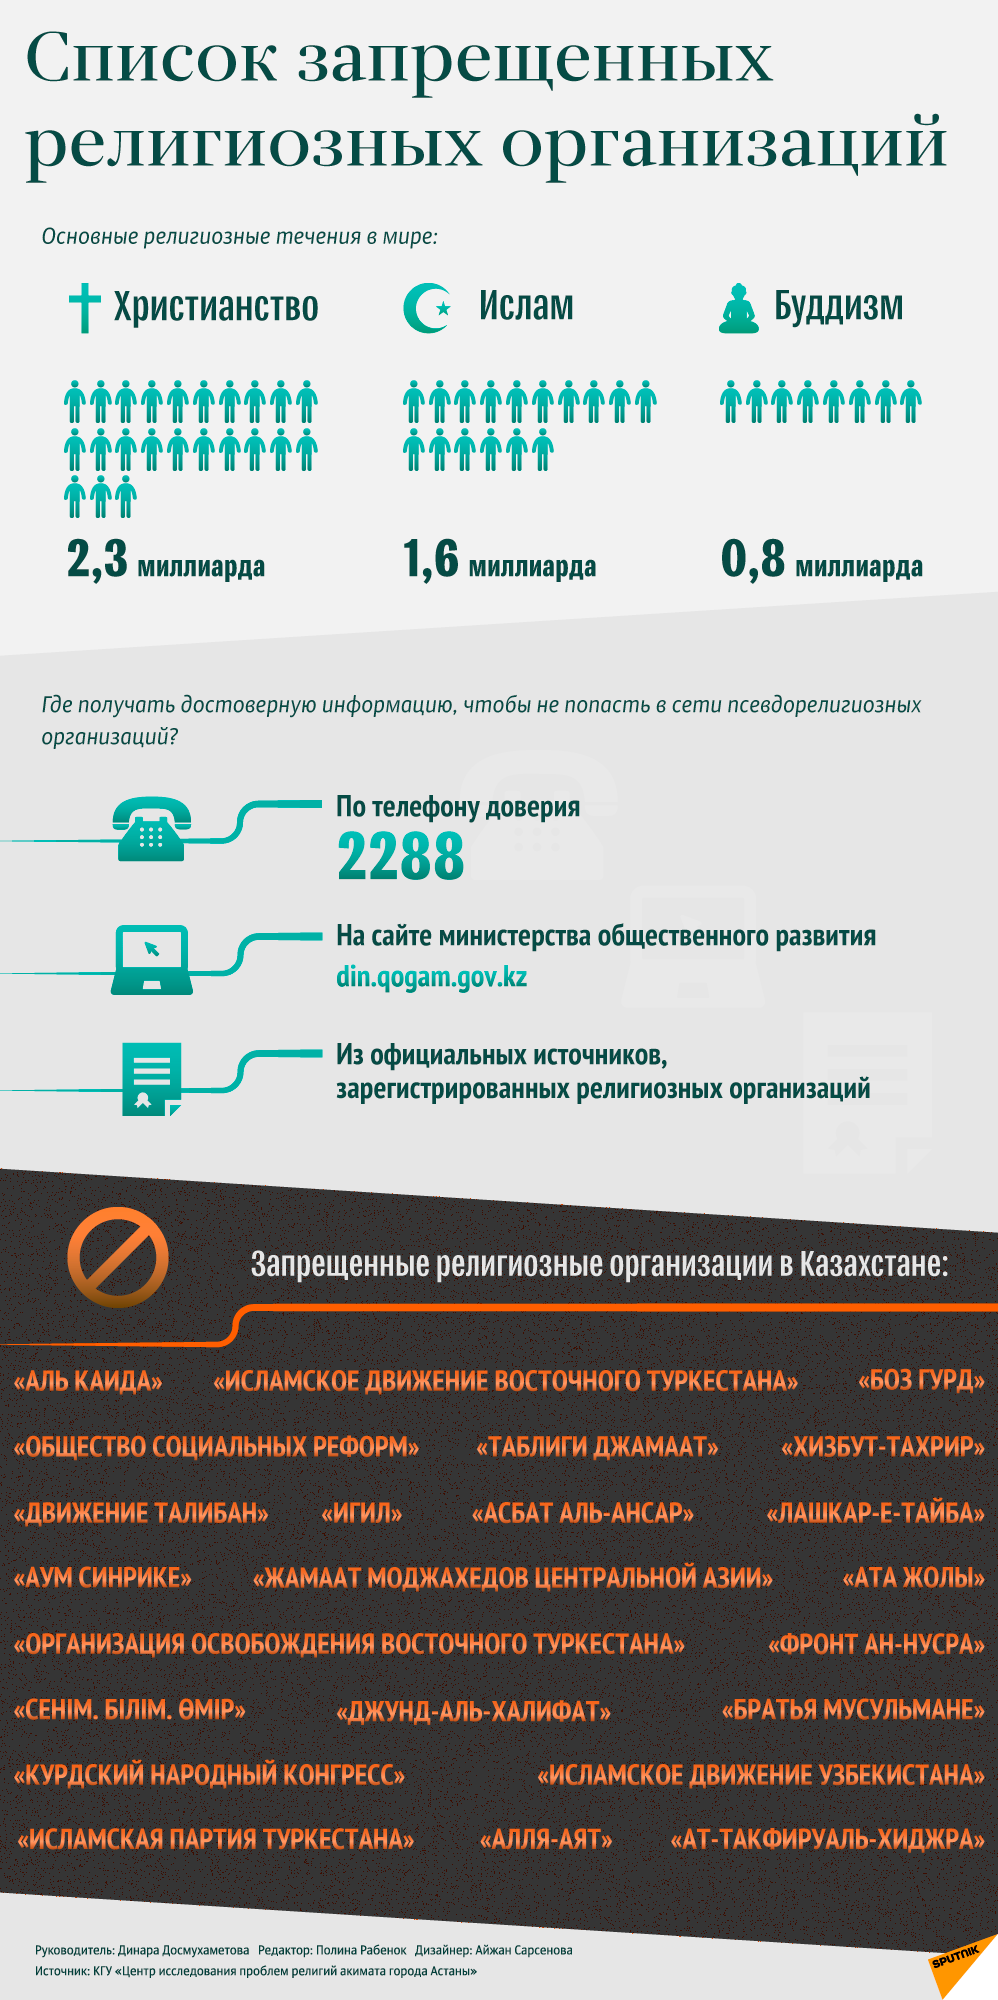 Религиозные организации, запрещенные в Казахстане - инфографика -